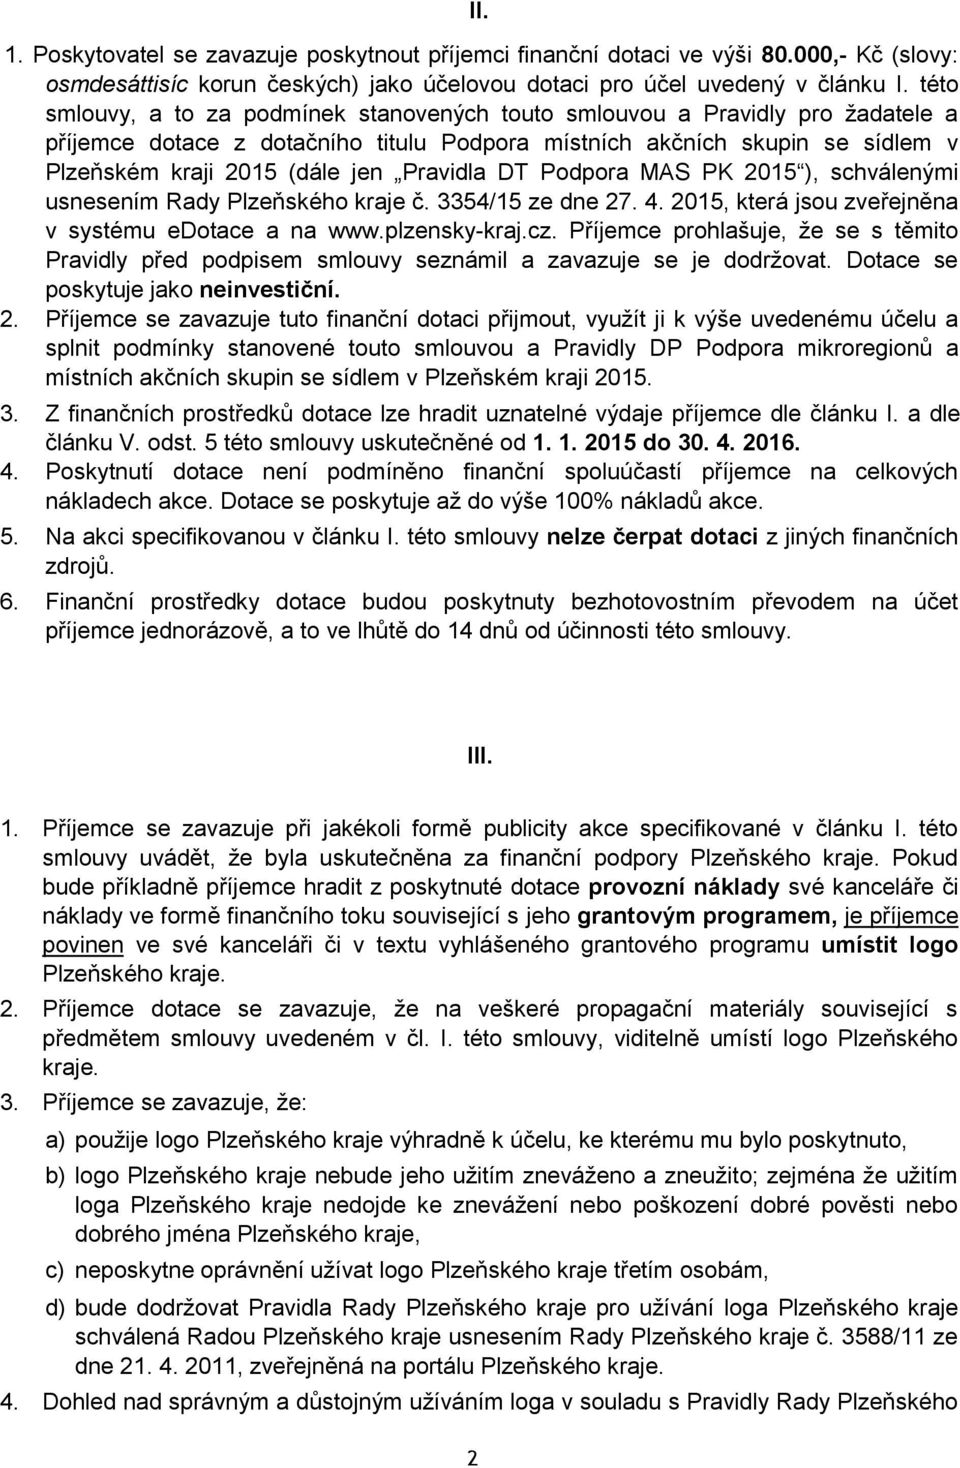 Pravidla DT Podpora MAS PK 2015 ), schválenými usnesením Rady Plzeňského kraje č. 3354/15 ze dne 27. 4. 2015, která jsou zveřejněna v systému edotace a na www.plzensky-kraj.cz.